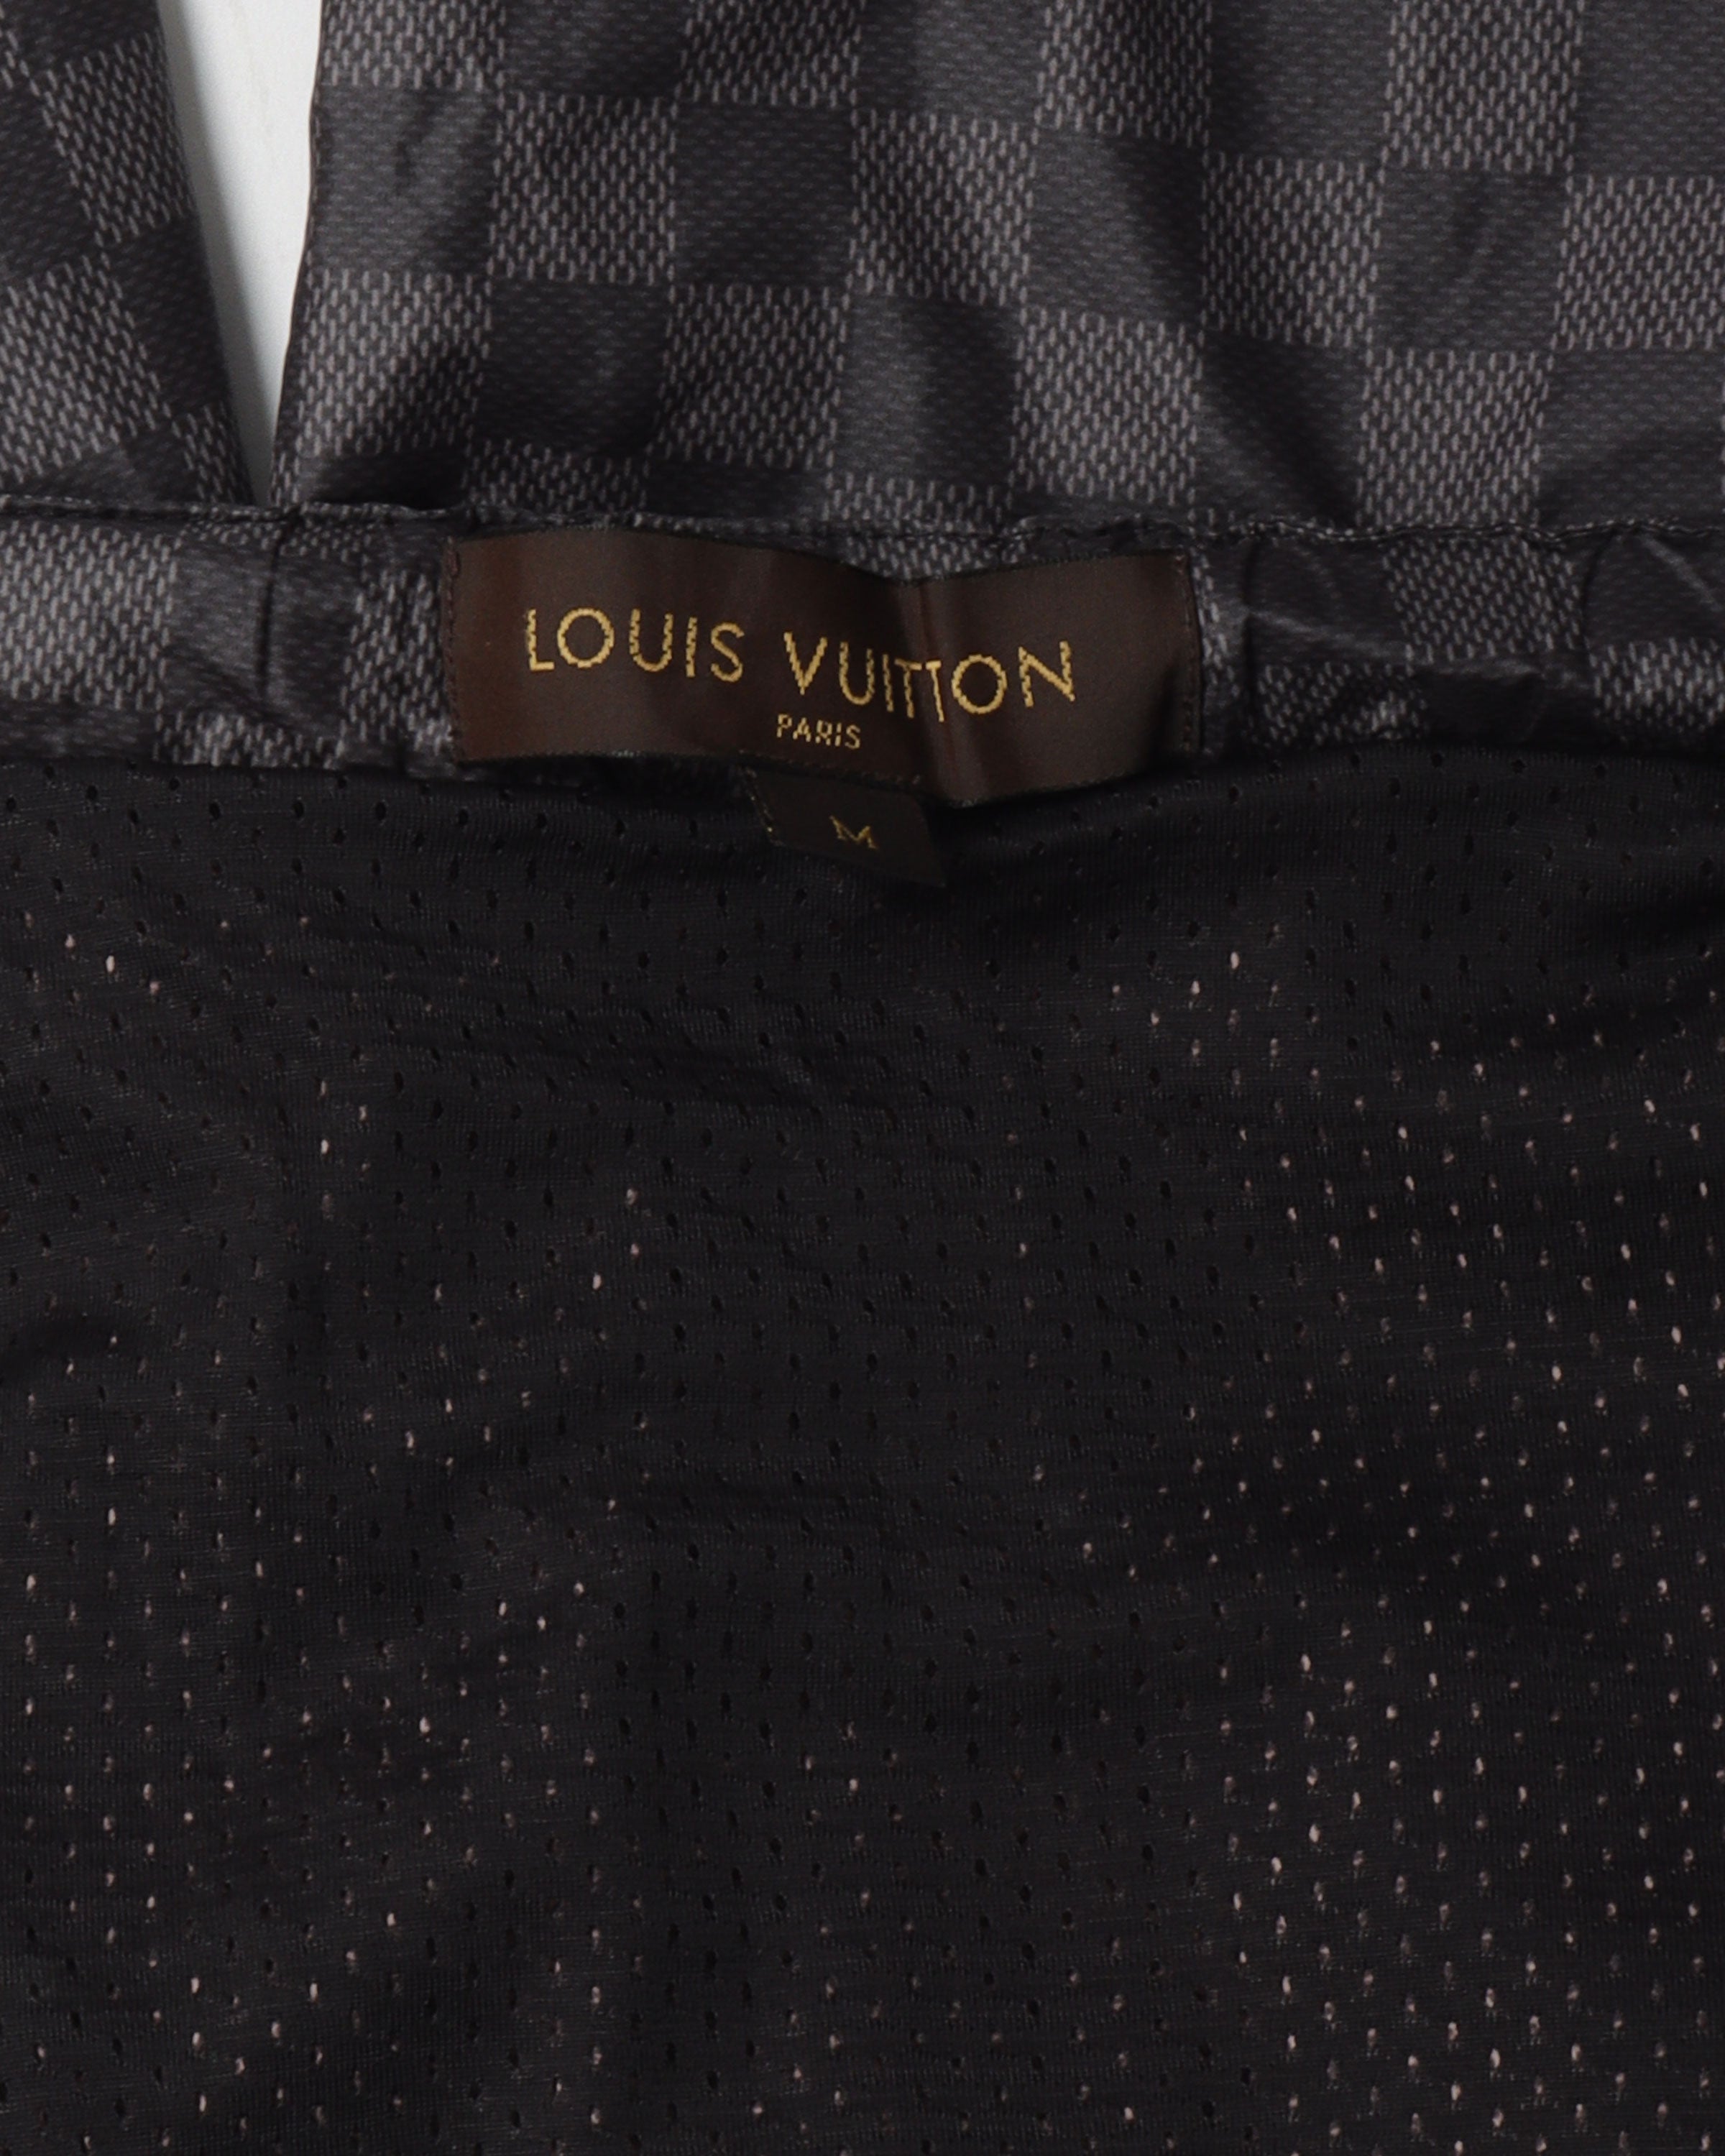 100% Authentic Louis Vuitton Damier Trunks Shorts Swim Size XL